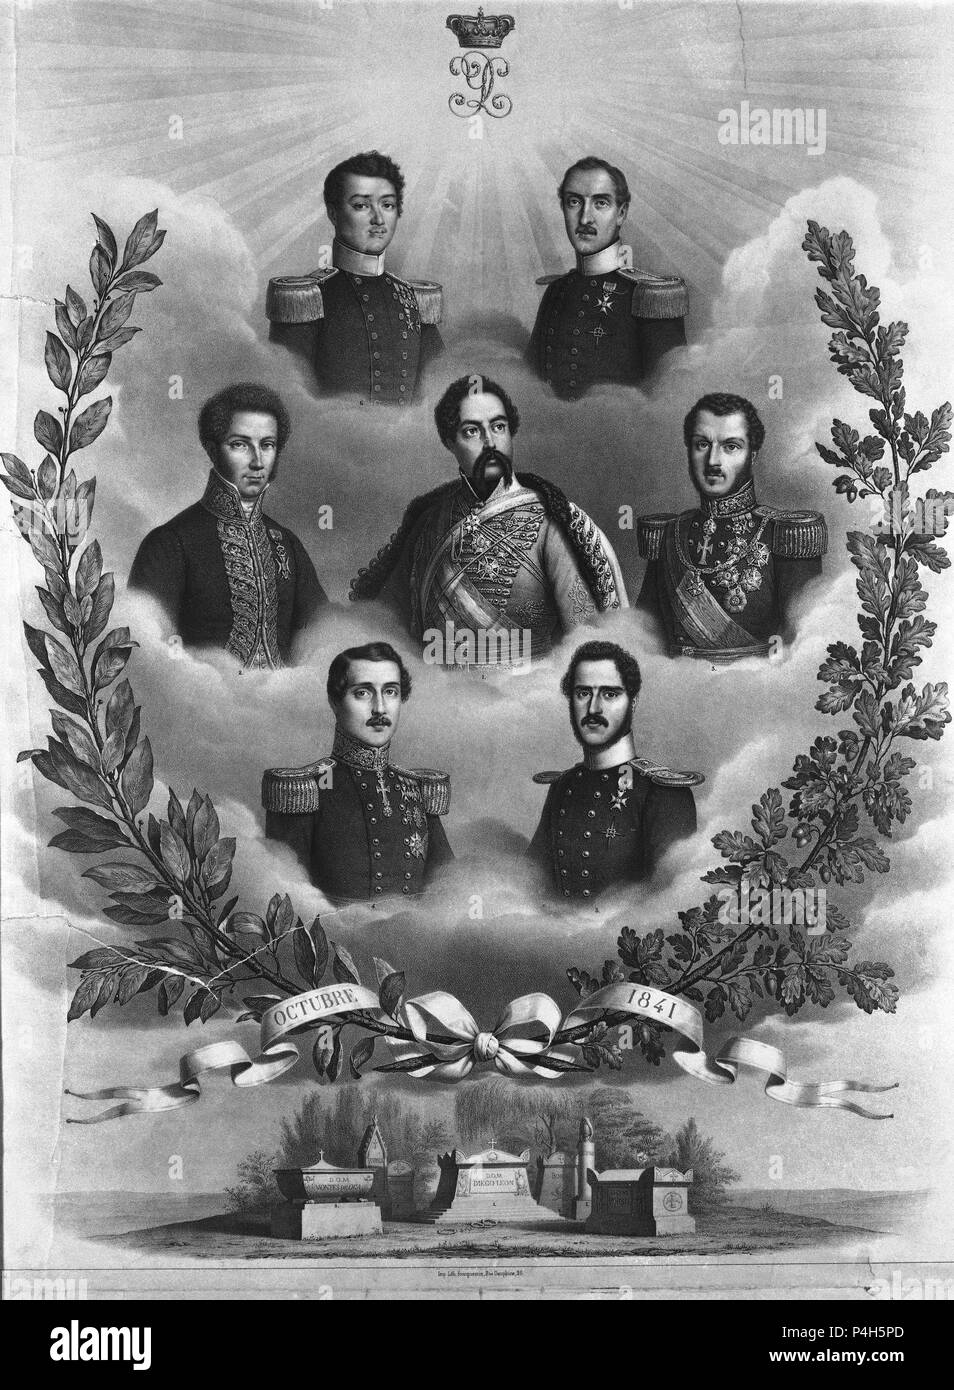 PERSONAJES ILUSTRES - OCTUBRE DE 1841 - GRABADO SIGLO XIX. Location: MUSEO ROMANTICO-GRABADO, MADRID, SPAIN. Stock Photo